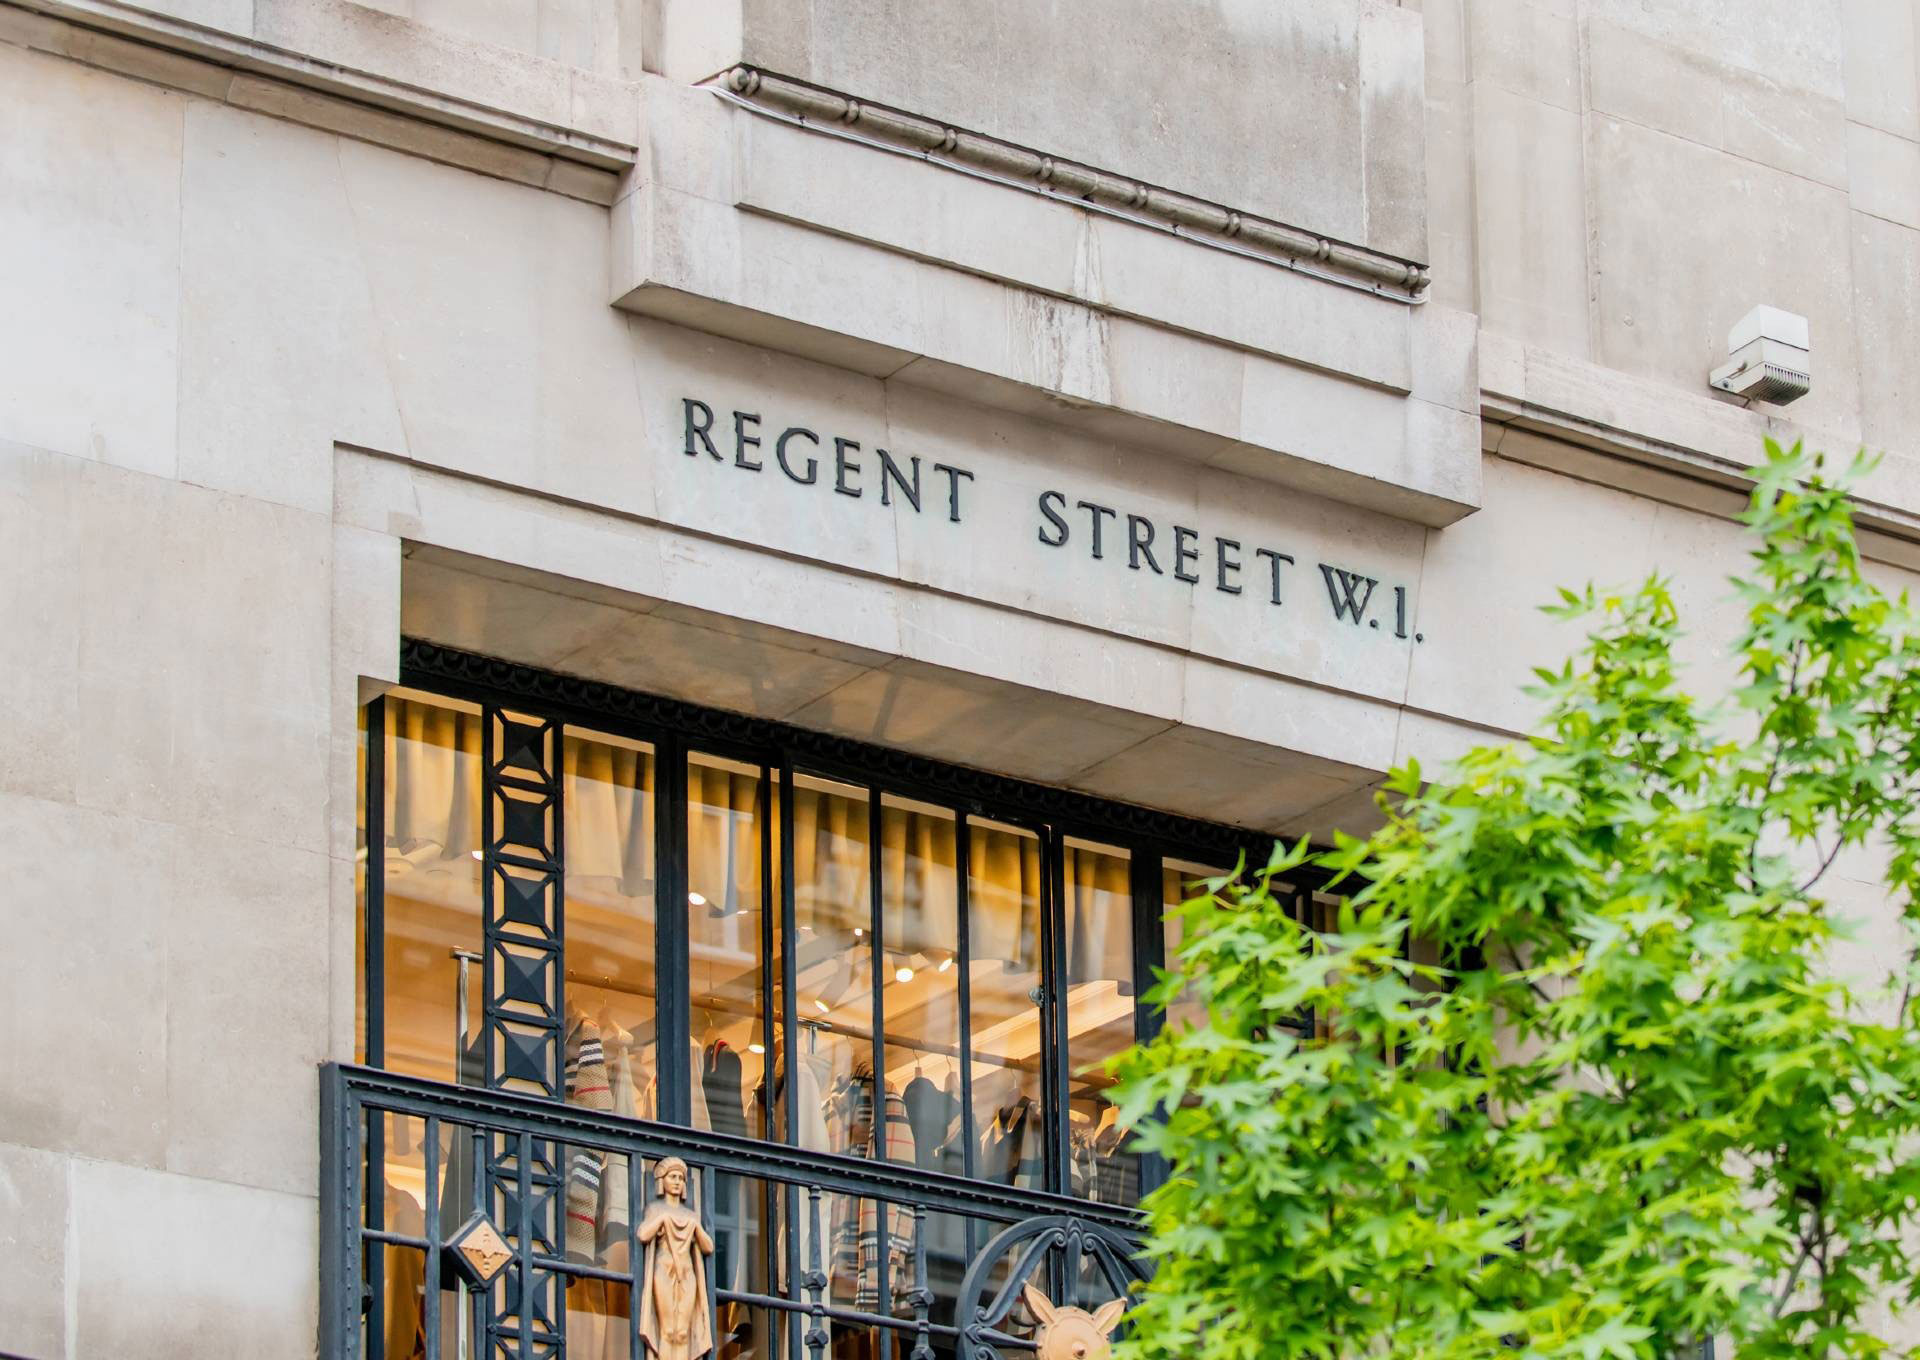 Regent Street signage on a building